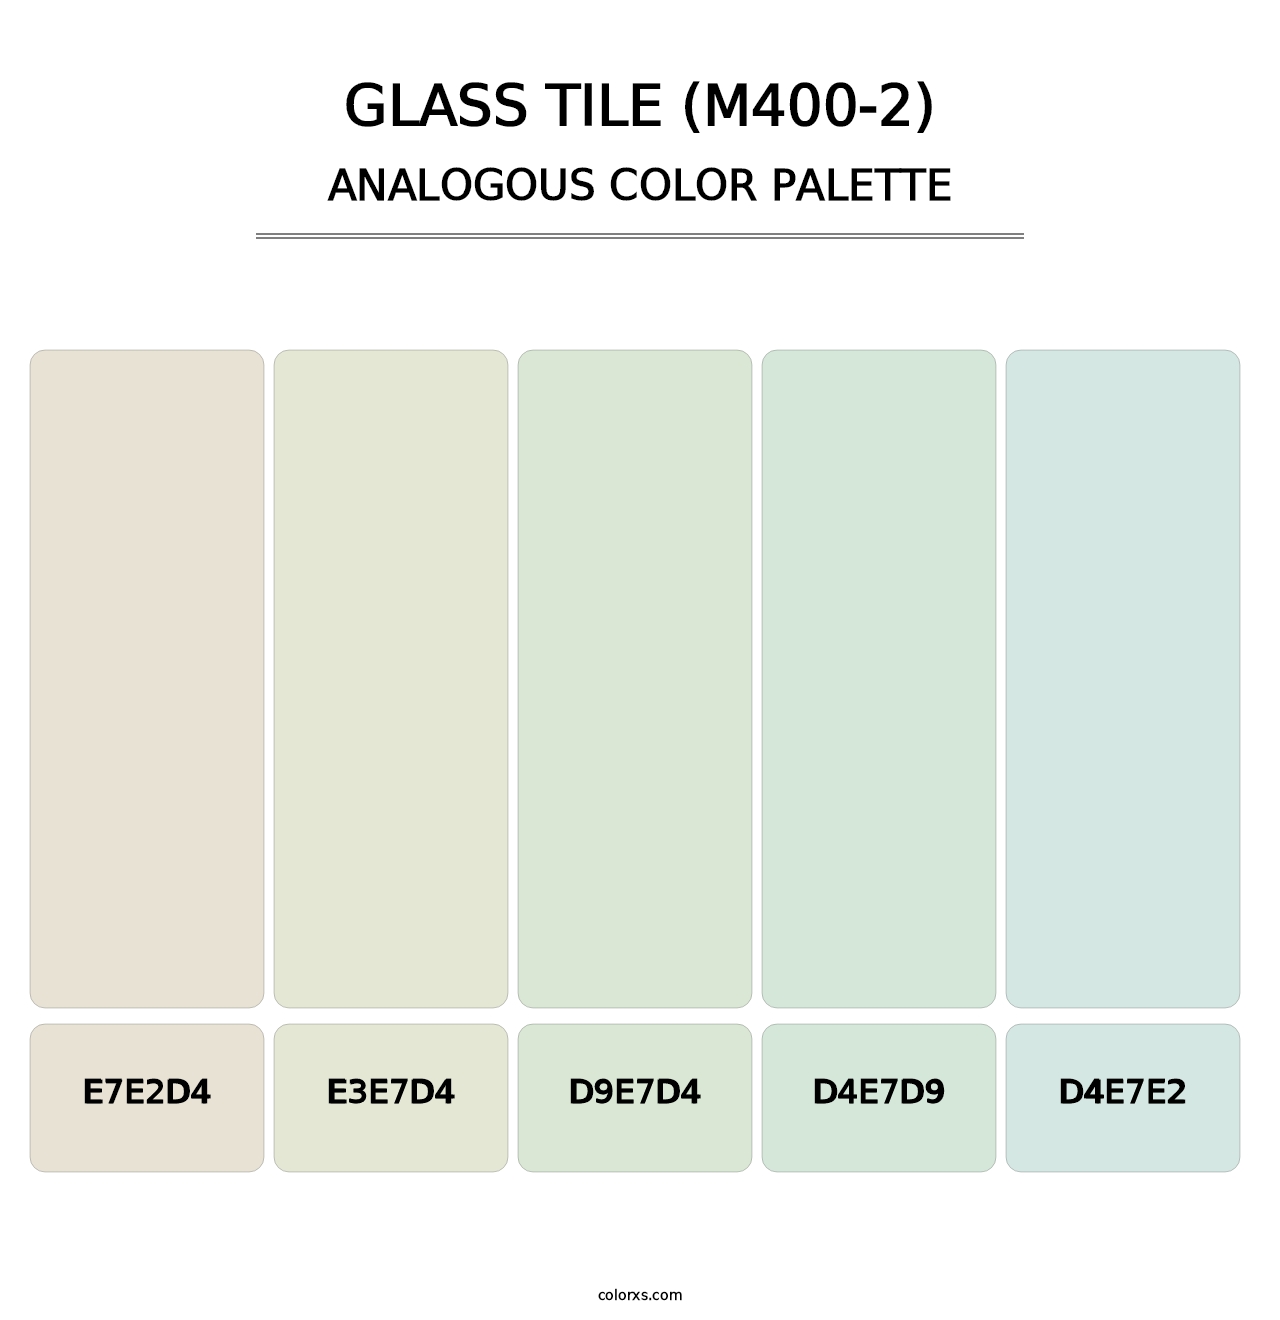 Glass Tile (M400-2) - Analogous Color Palette